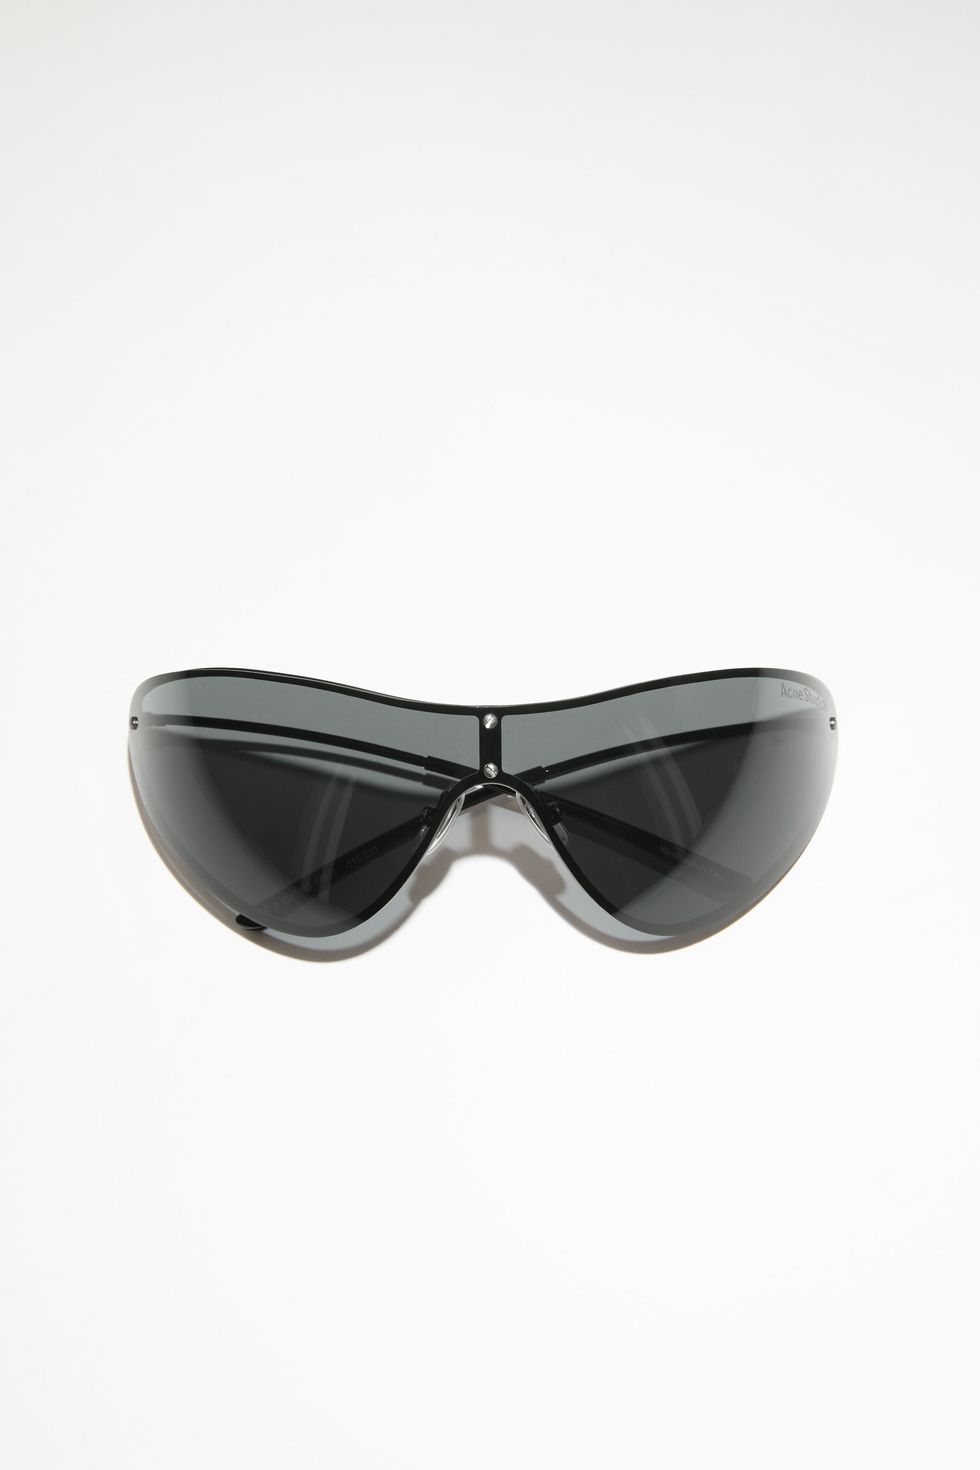 I migliori modelli di occhiali veloci | Elle Decor